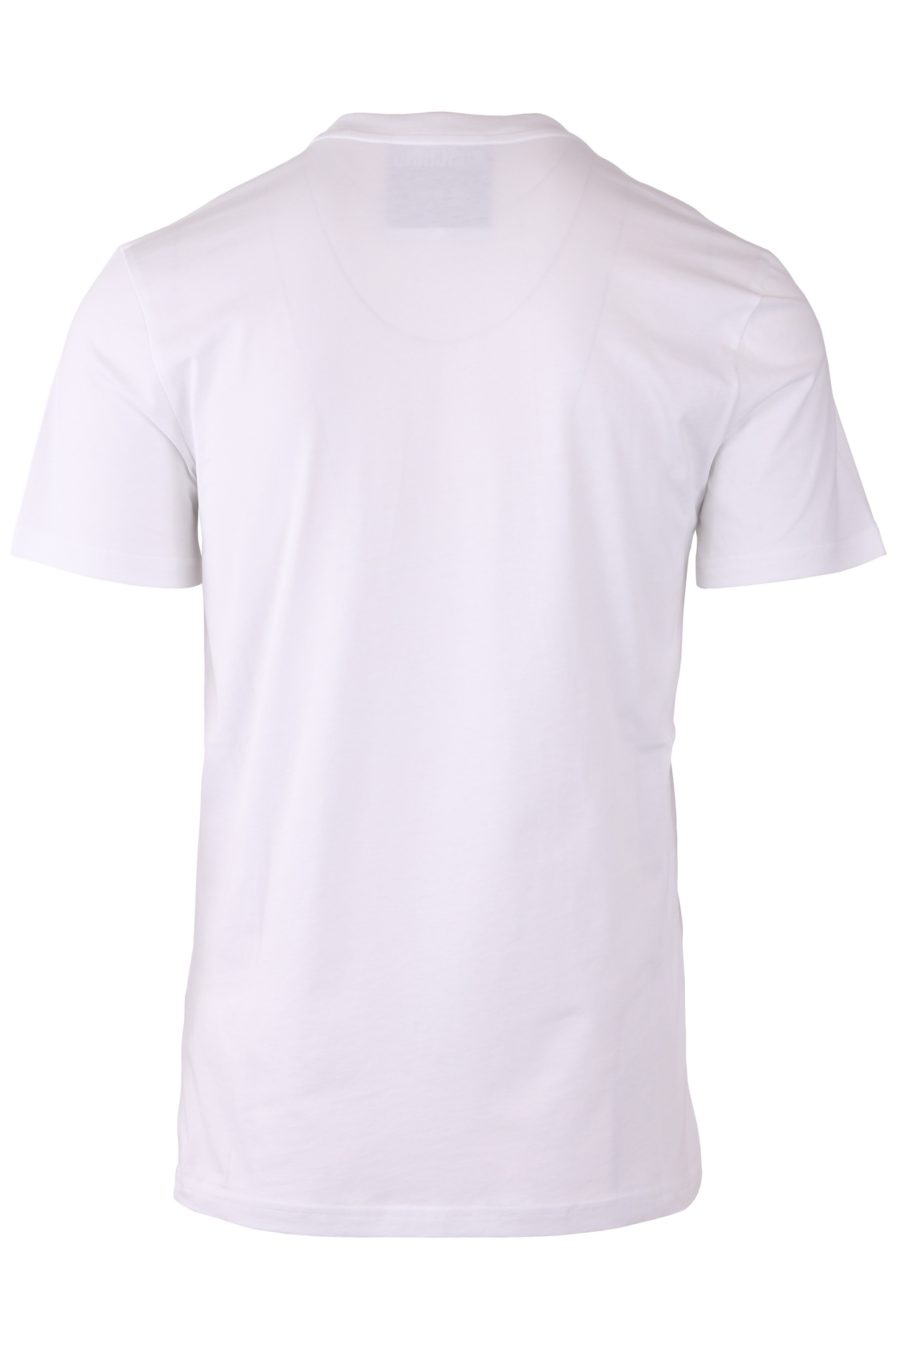 Camiseta Moschino Couture blanca regular con logo doble pregunta - 1e52da730d362aa2afc5e888c684e0a6489f9136